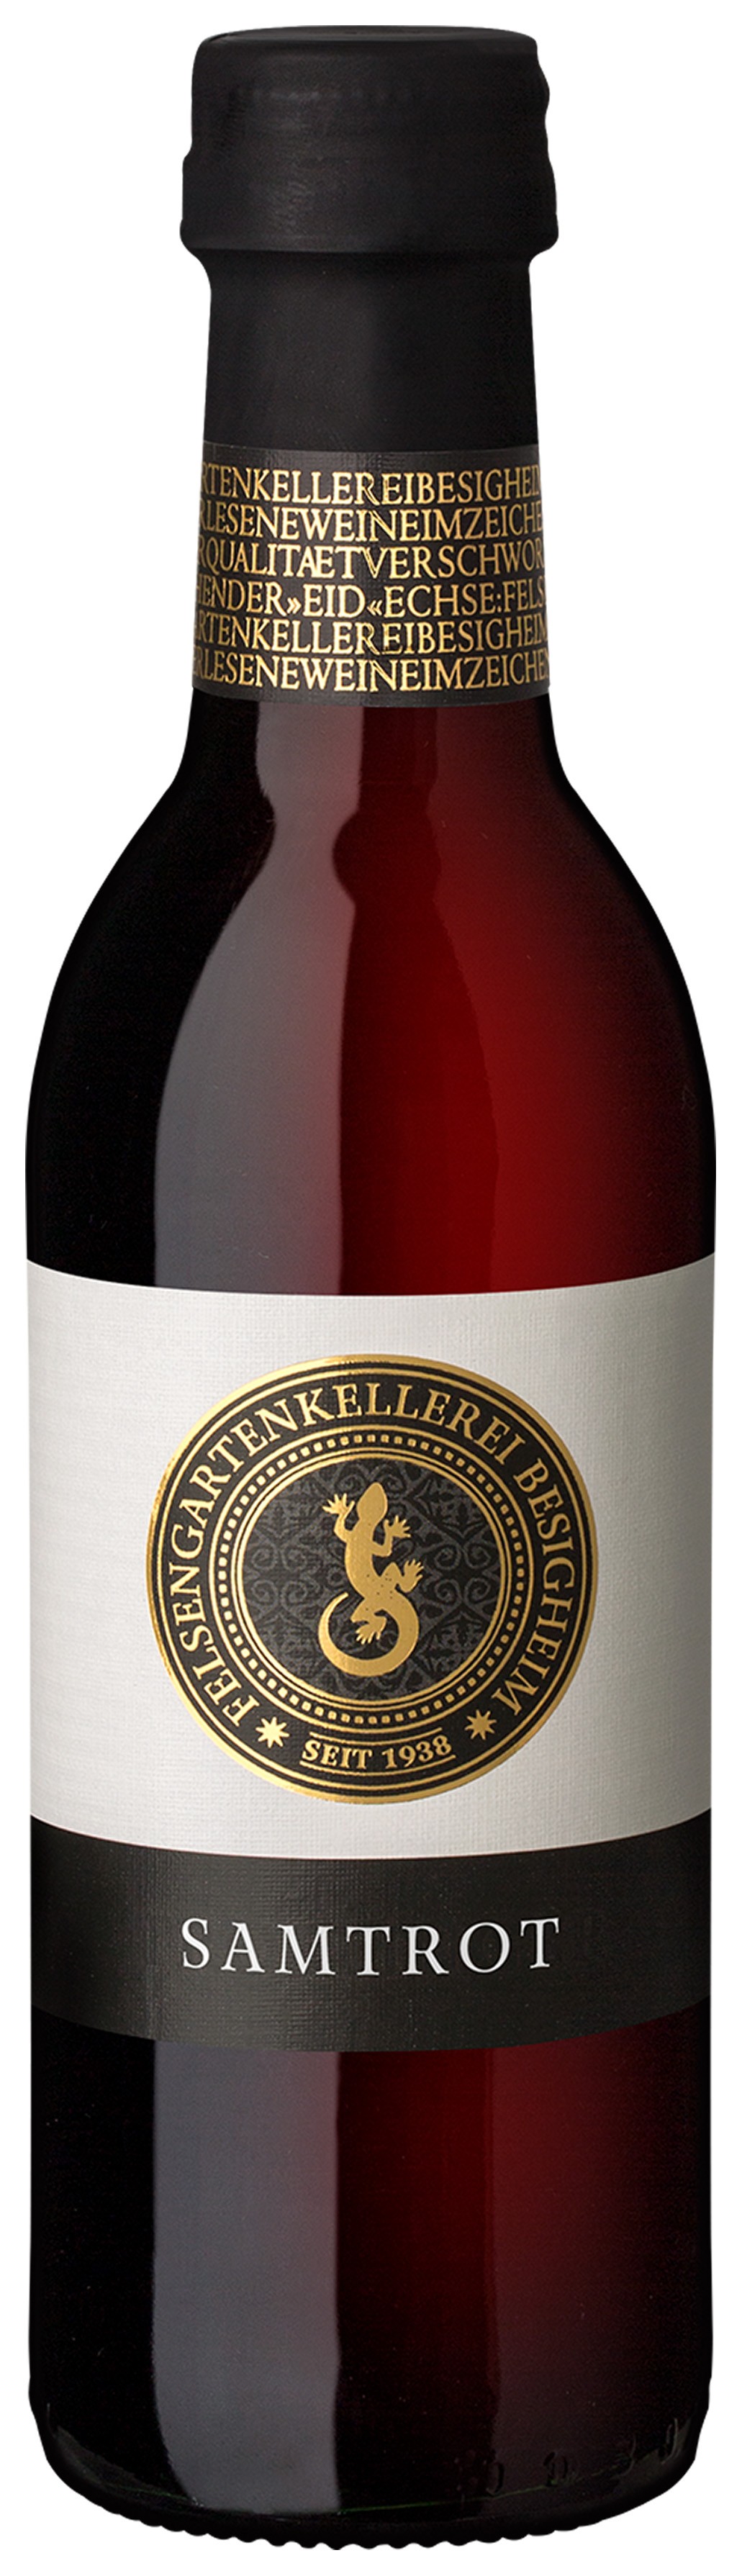 Felsengartenkellerei Samtrot 0,25 L Rotwein halbtrocken - Qualitätswein, kleine Weinflasche, Württemberg